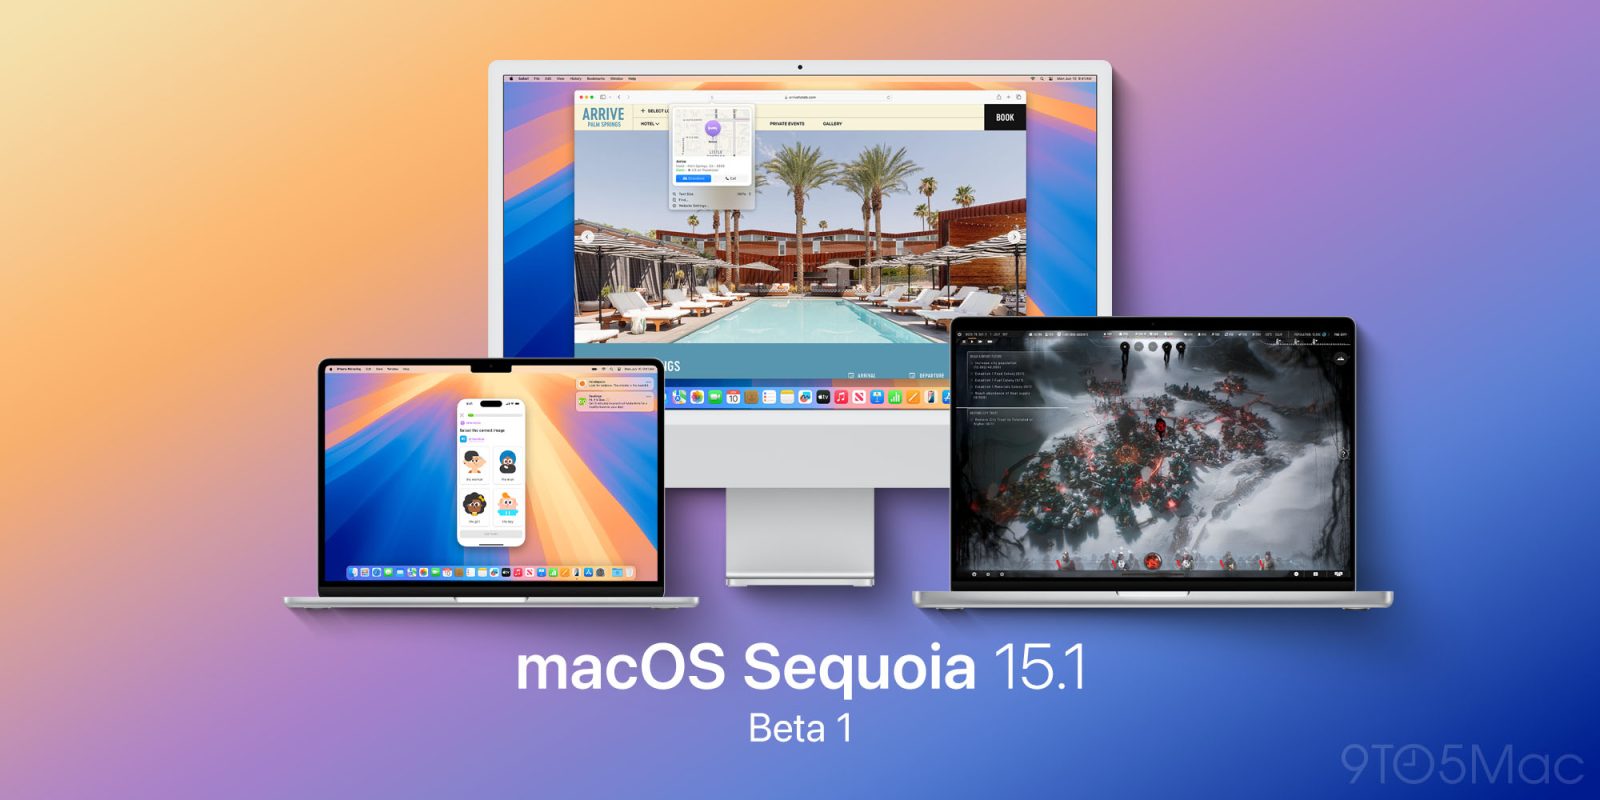 macOS Sequoia 15.1 beta 1